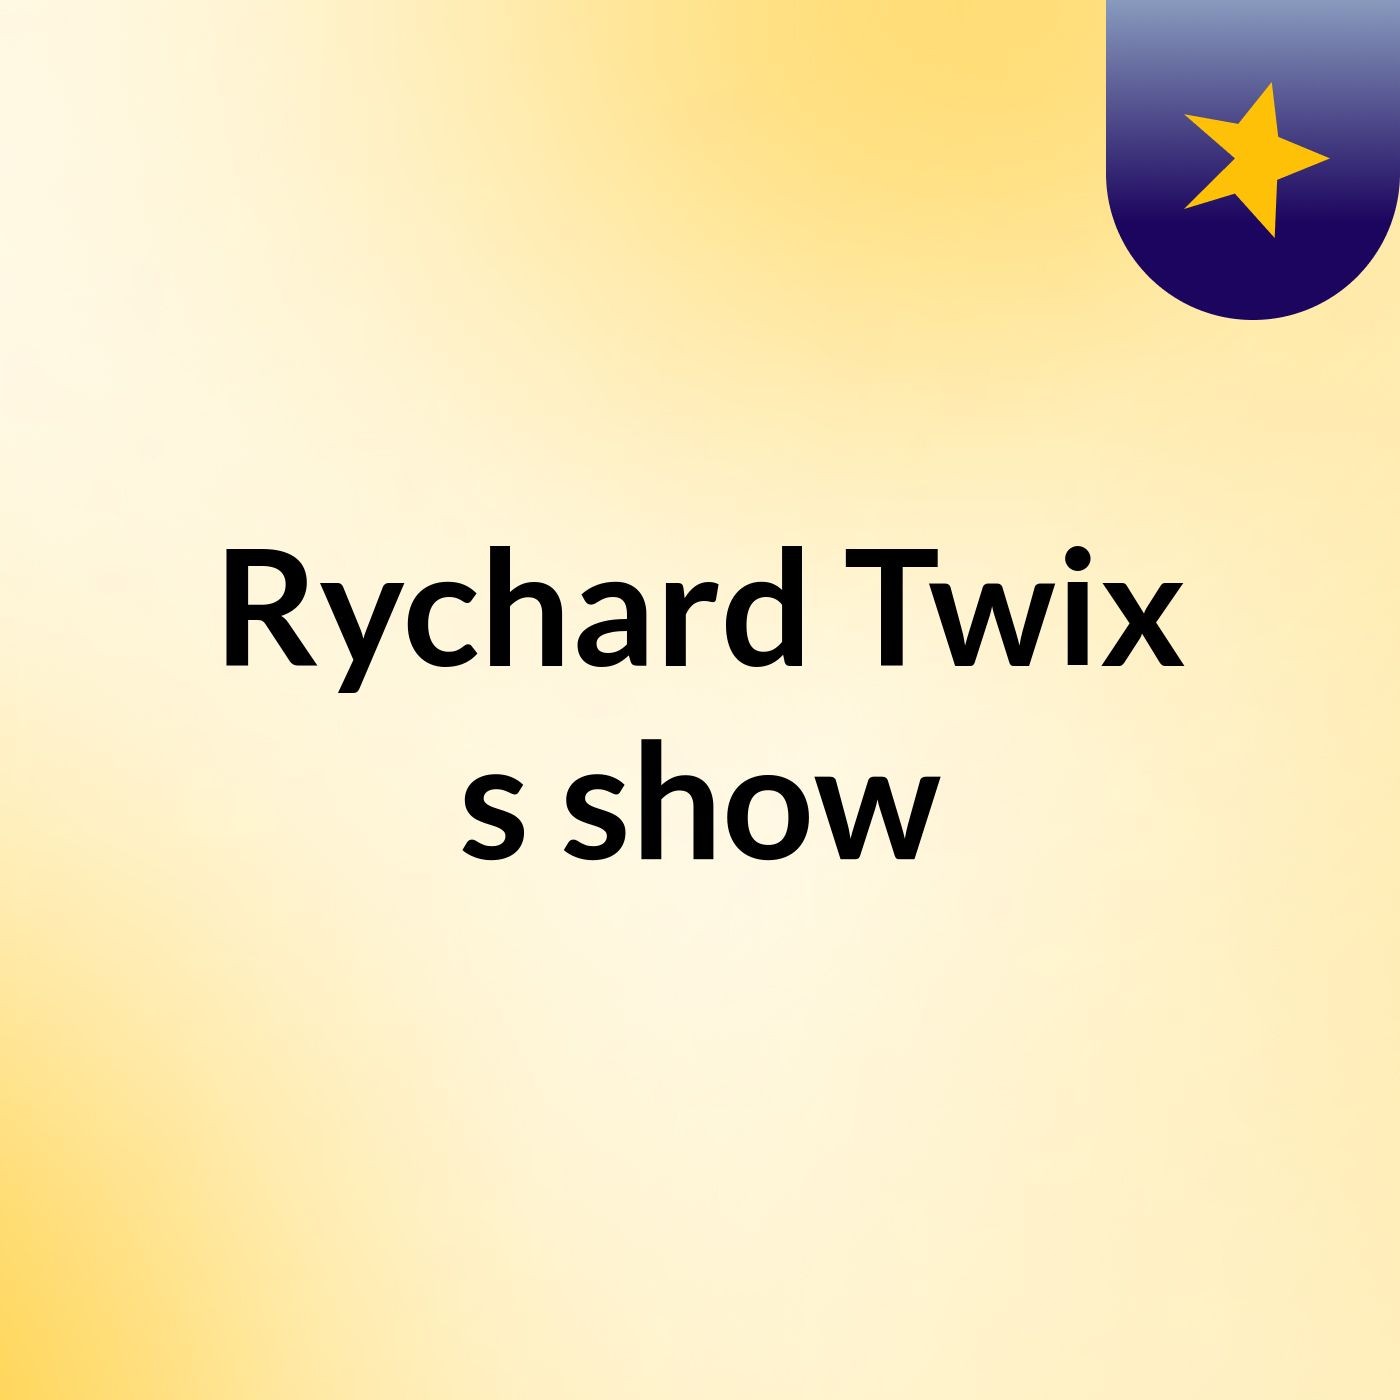 Rychard Twix's show